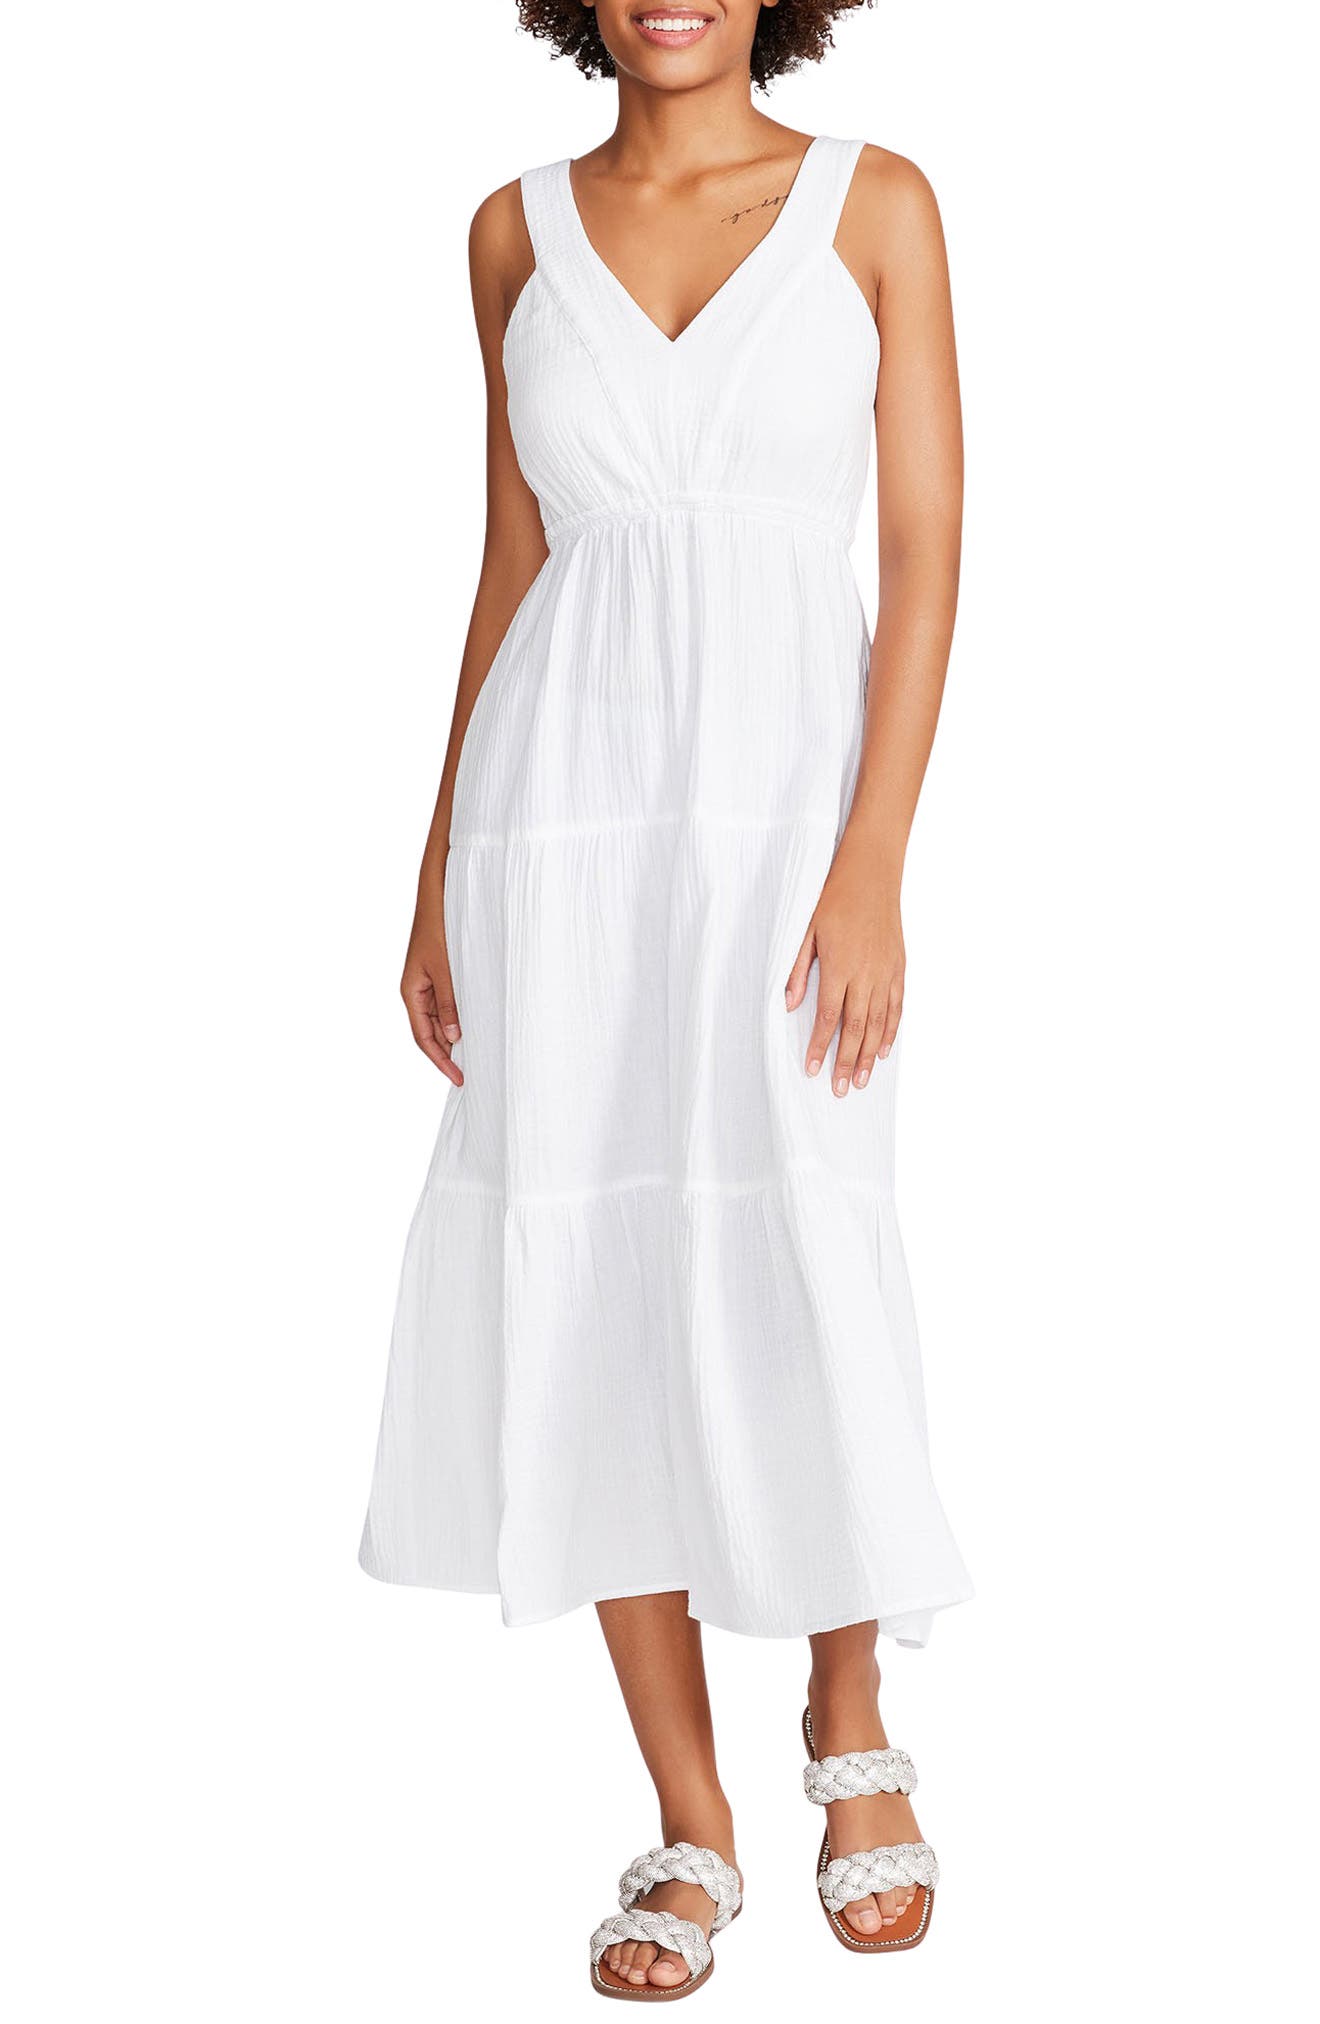 nordstrom rack white dress